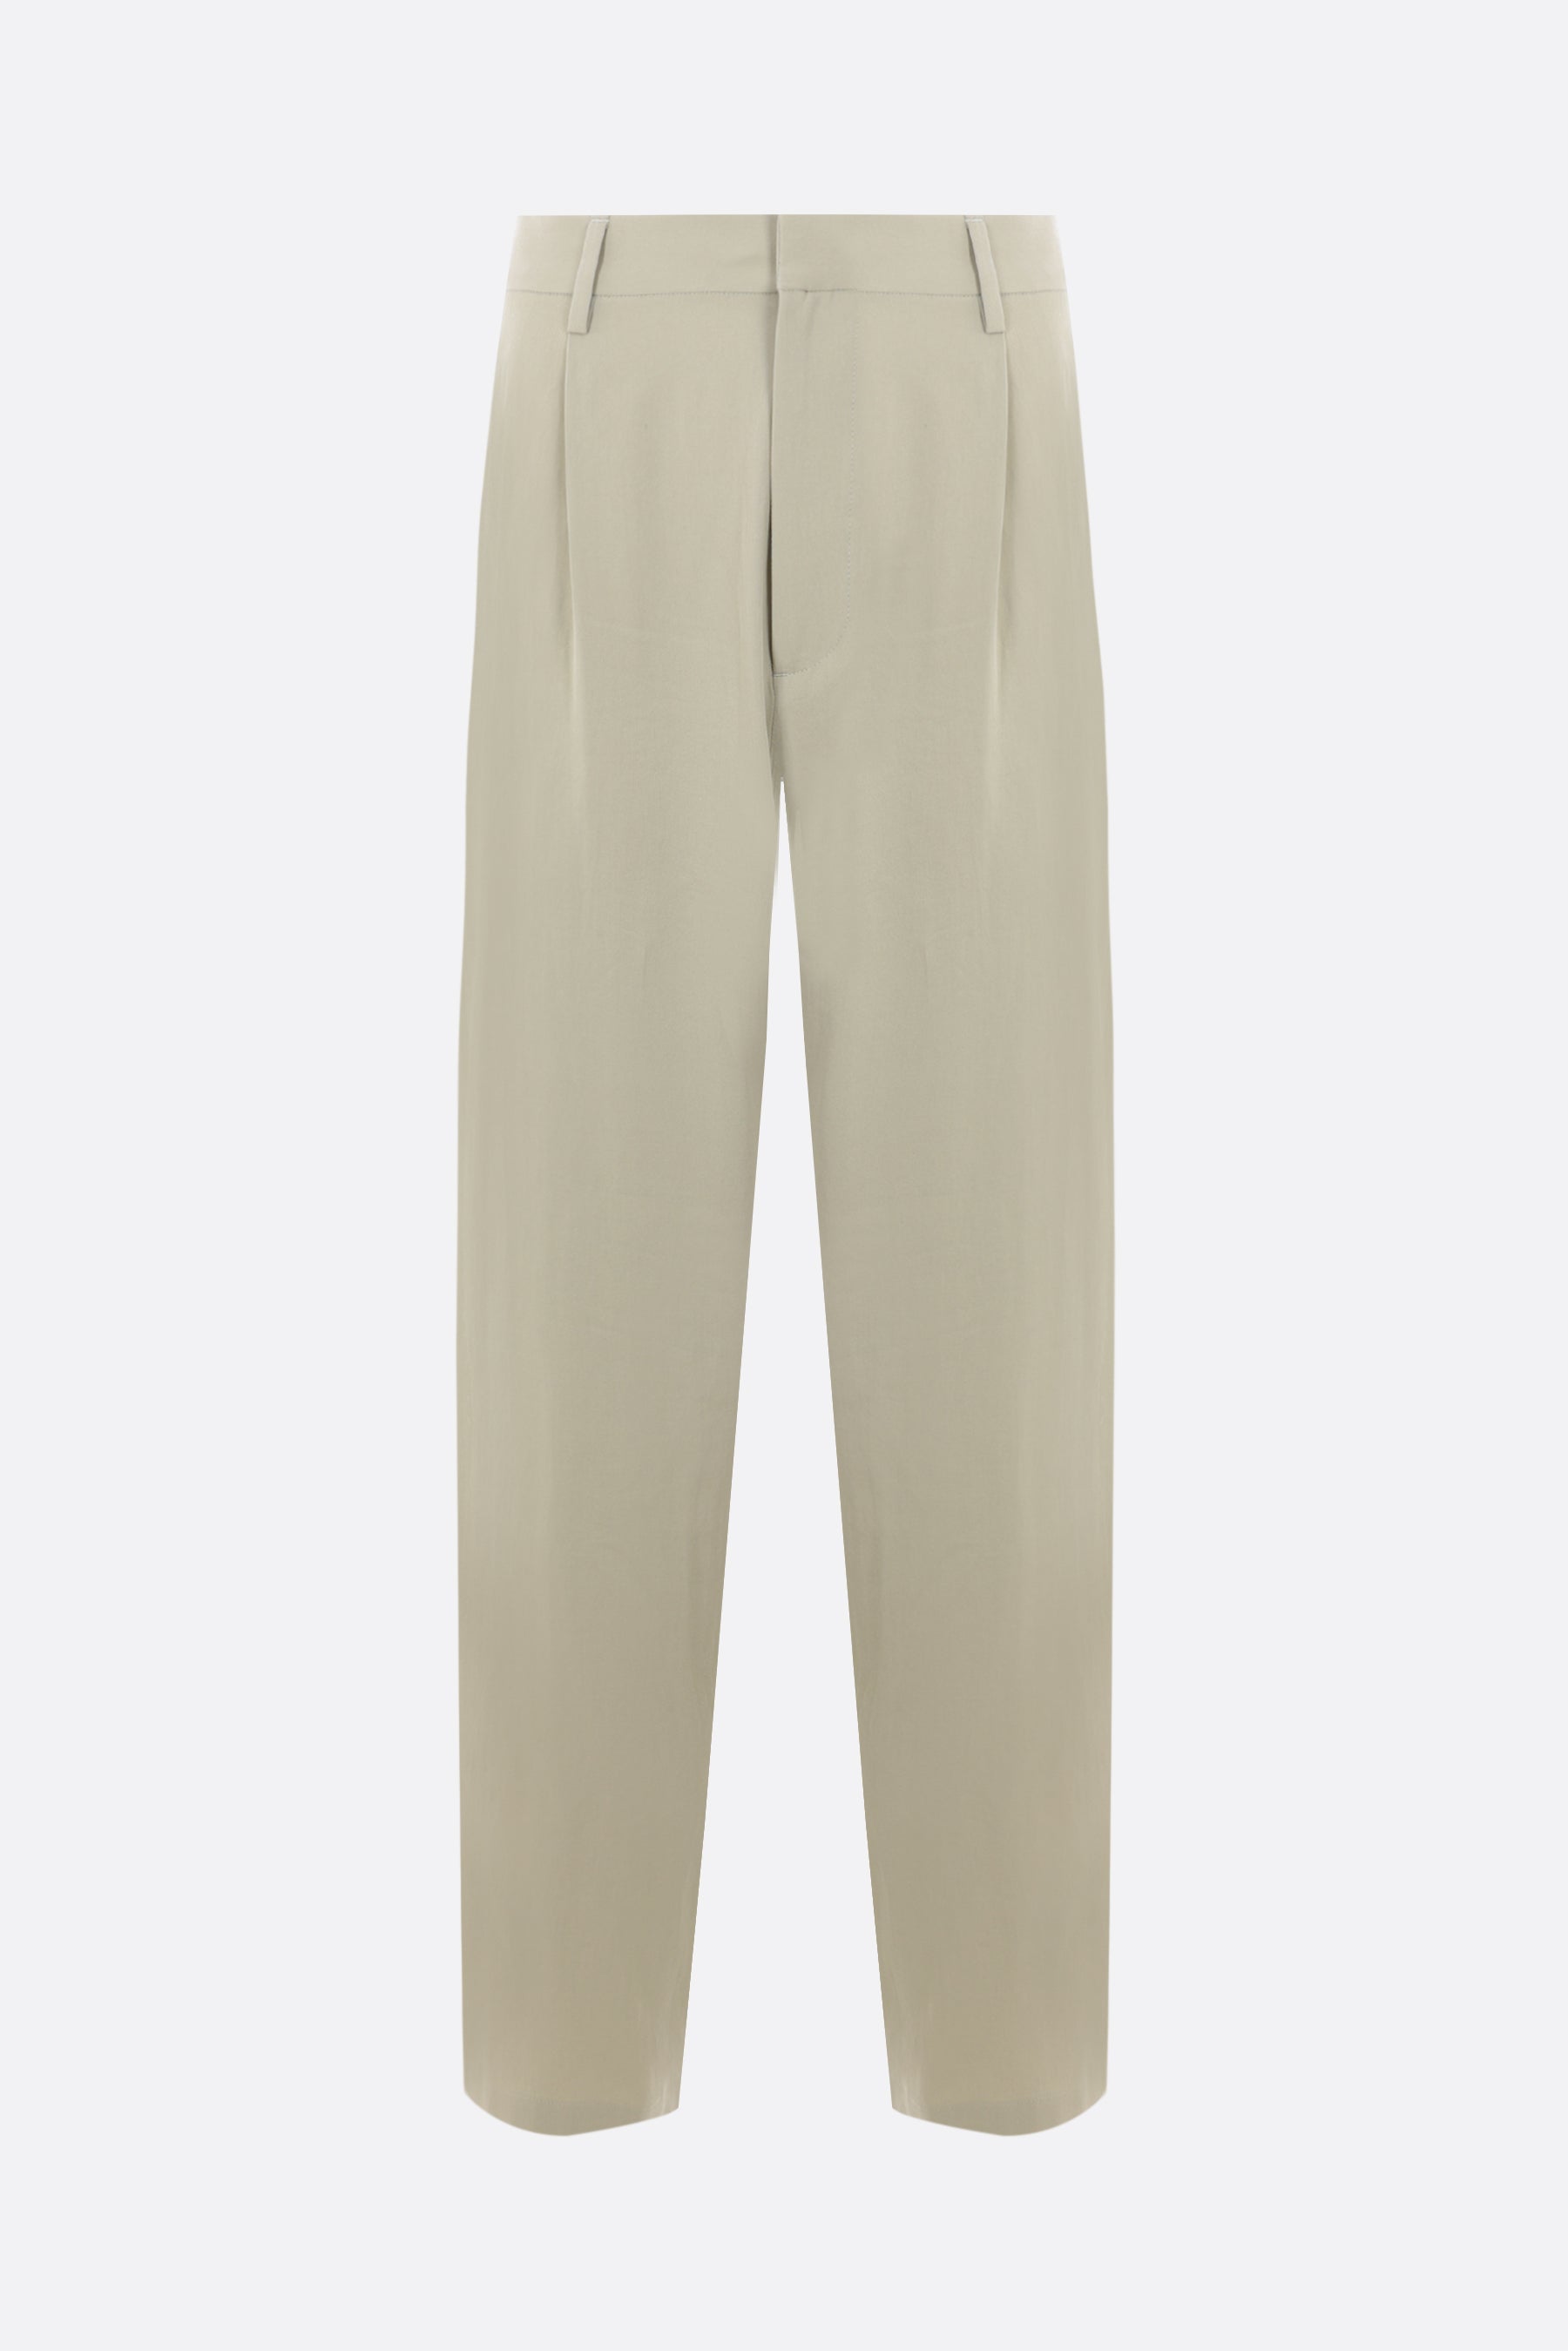 pantalone loose-fit in cotone e seta